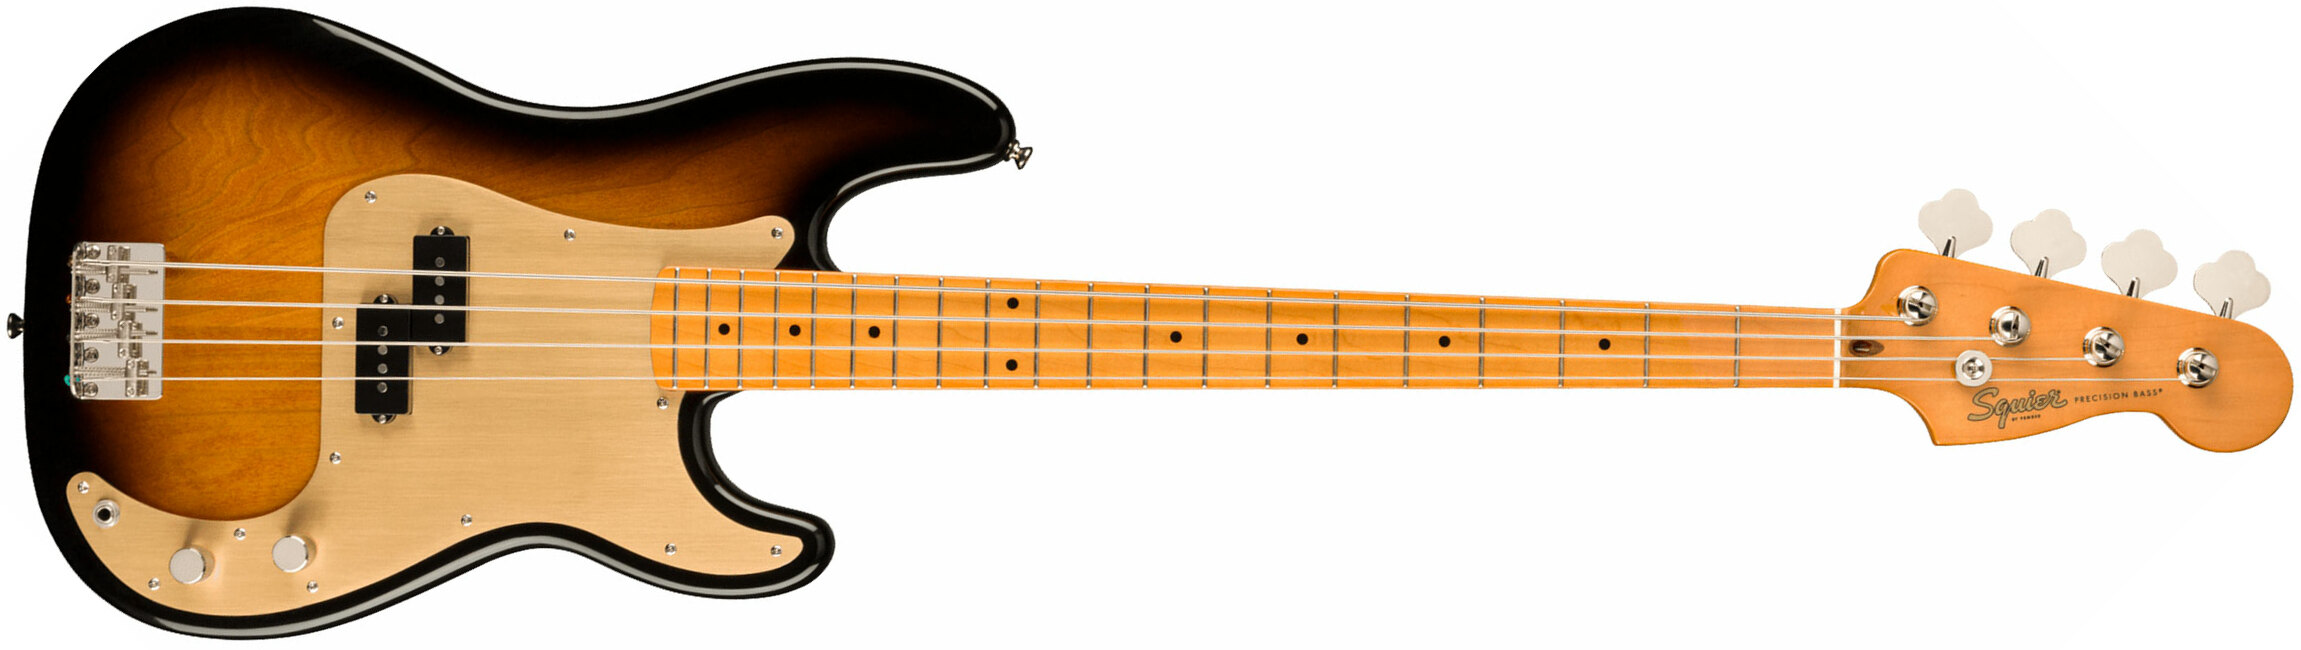 Squier Precision Bass Late '50s Classic Vibe Fsr Ltd Mn - 2-color Sunburst - Solidbody E-bass - Main picture